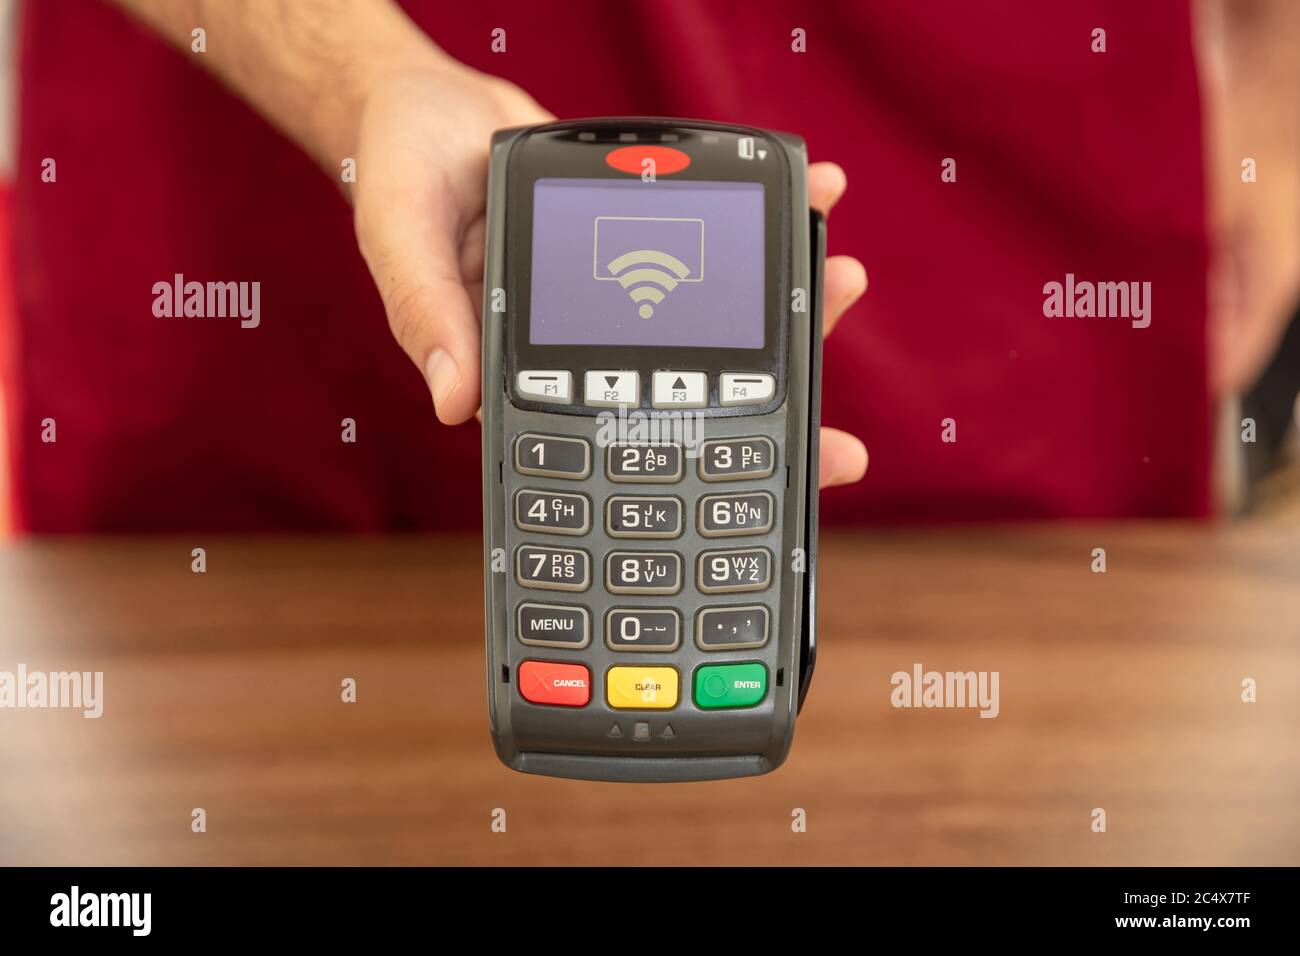 Kasse bietet POS-Terminal für die Zahlung mit Kreditkarte. Banking, Shopping und kontaktloses Bezahlen mit NFC-Technologiekonzept. Stockfoto